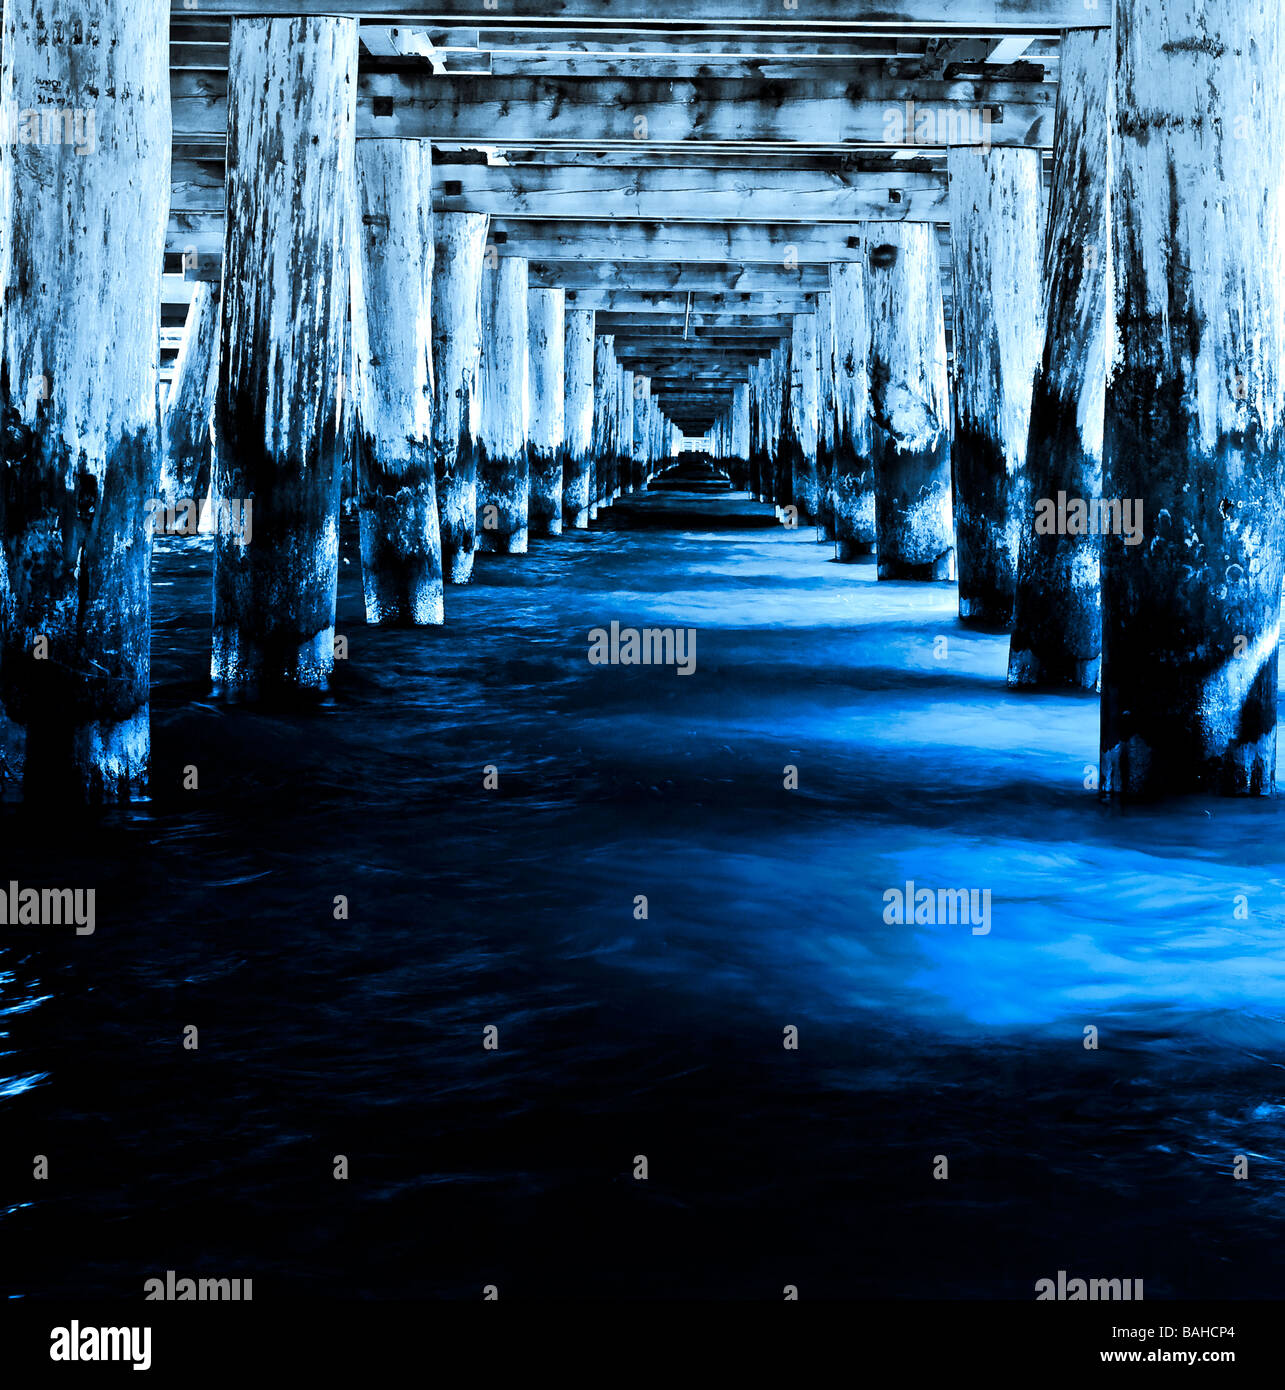 Langen, dunklen Tunnel unter dem hölzernen Pier von tief blau und kaltem Meerwasser überflutet. Nostalgische Licht und Schatten. Stockfoto